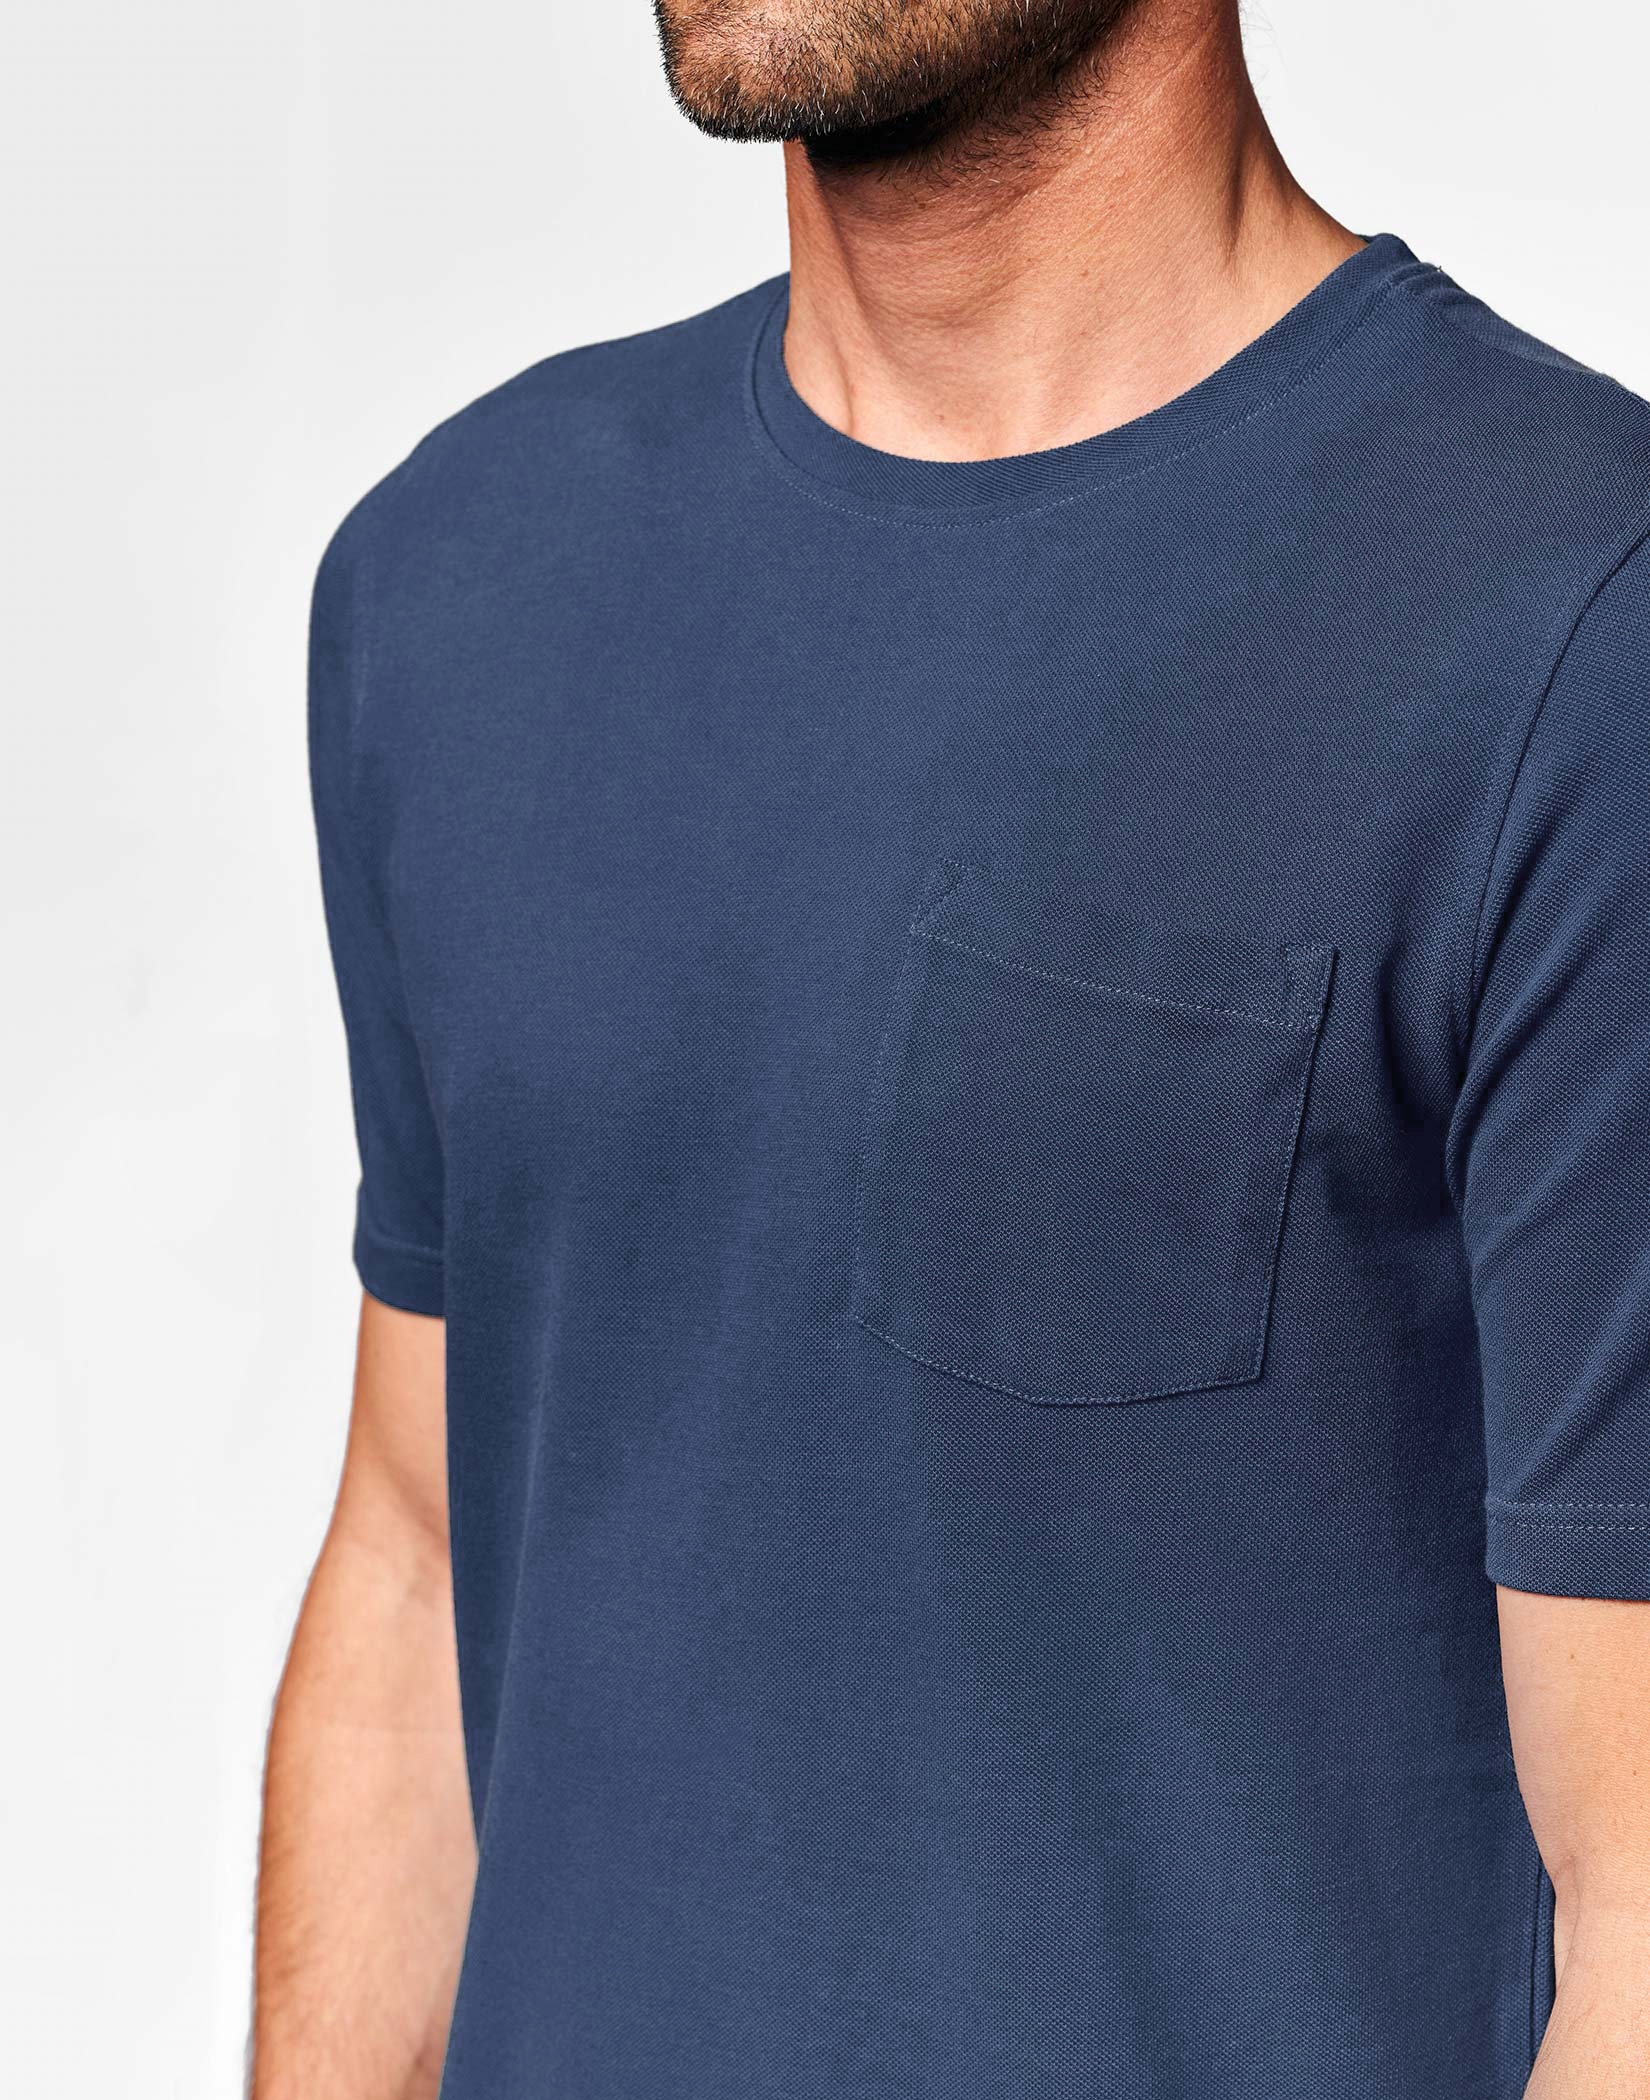 Pique T Shirt - Navy